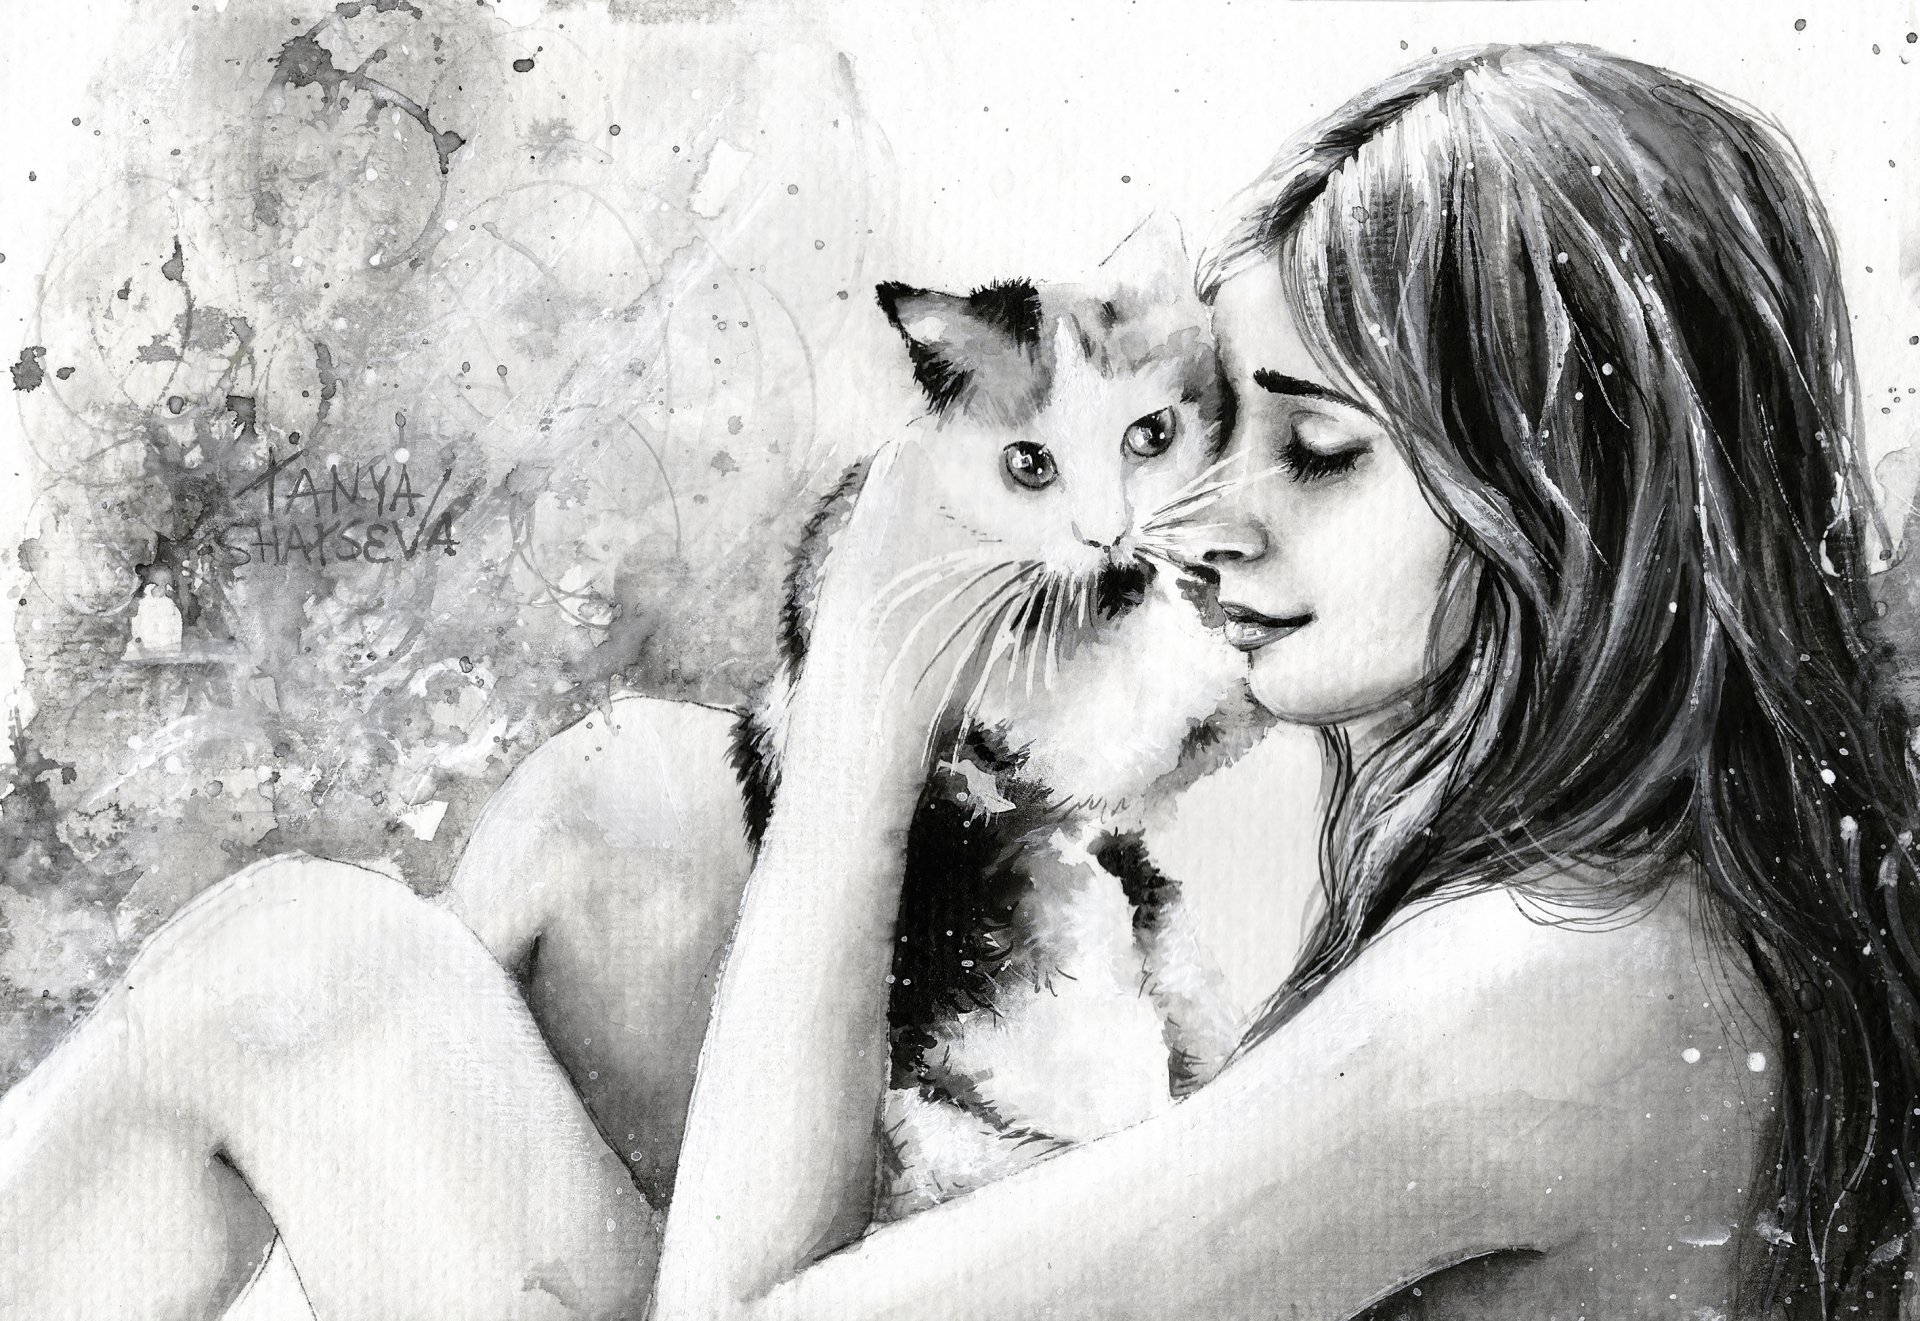 Картинка девушка с кошкой. Tanya Shatseva картины. Таня Шацева художник. Рисунок девушки. Картины с кошками.